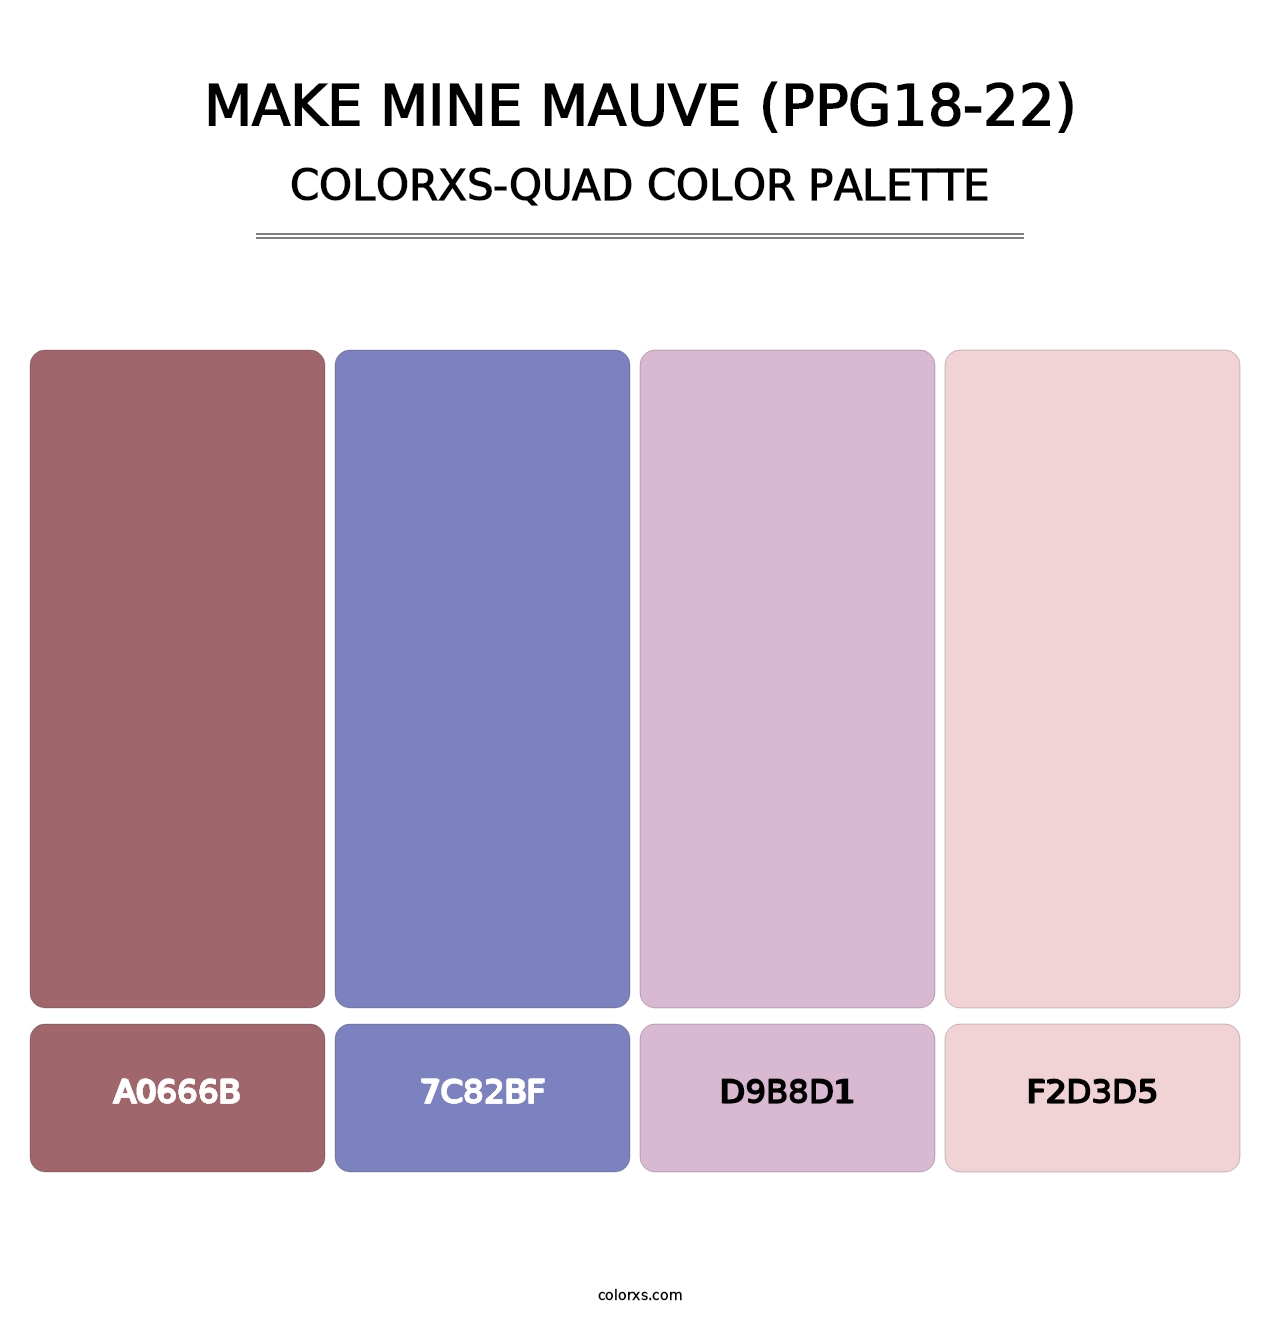 Make Mine Mauve (PPG18-22) - Colorxs Quad Palette